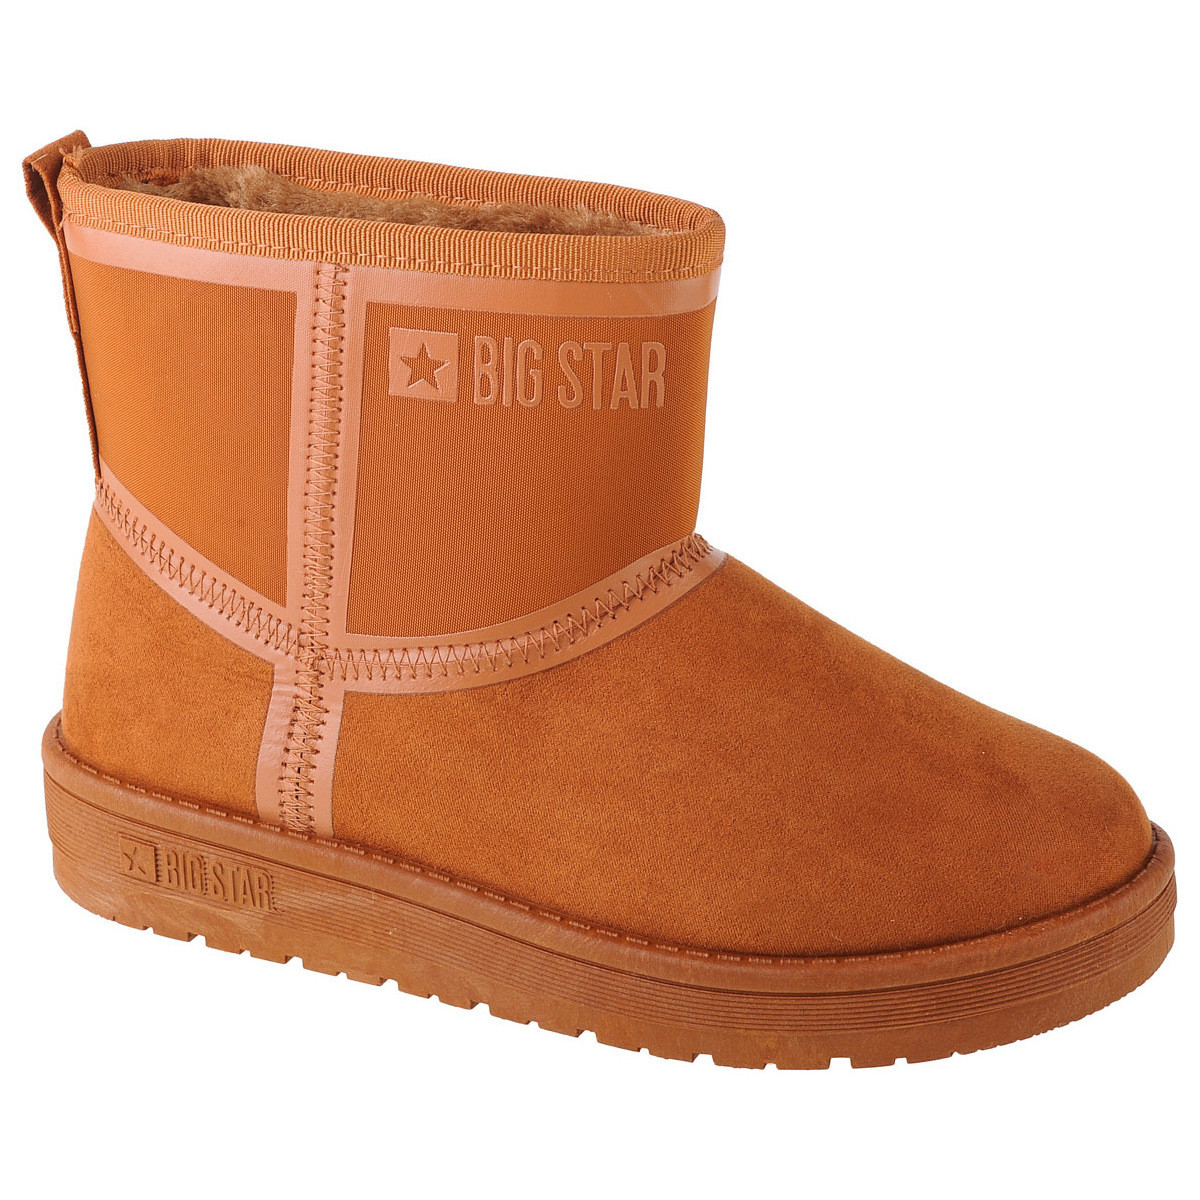 Schuhe Damen Schneestiefel Big Star Snow Boots Braun